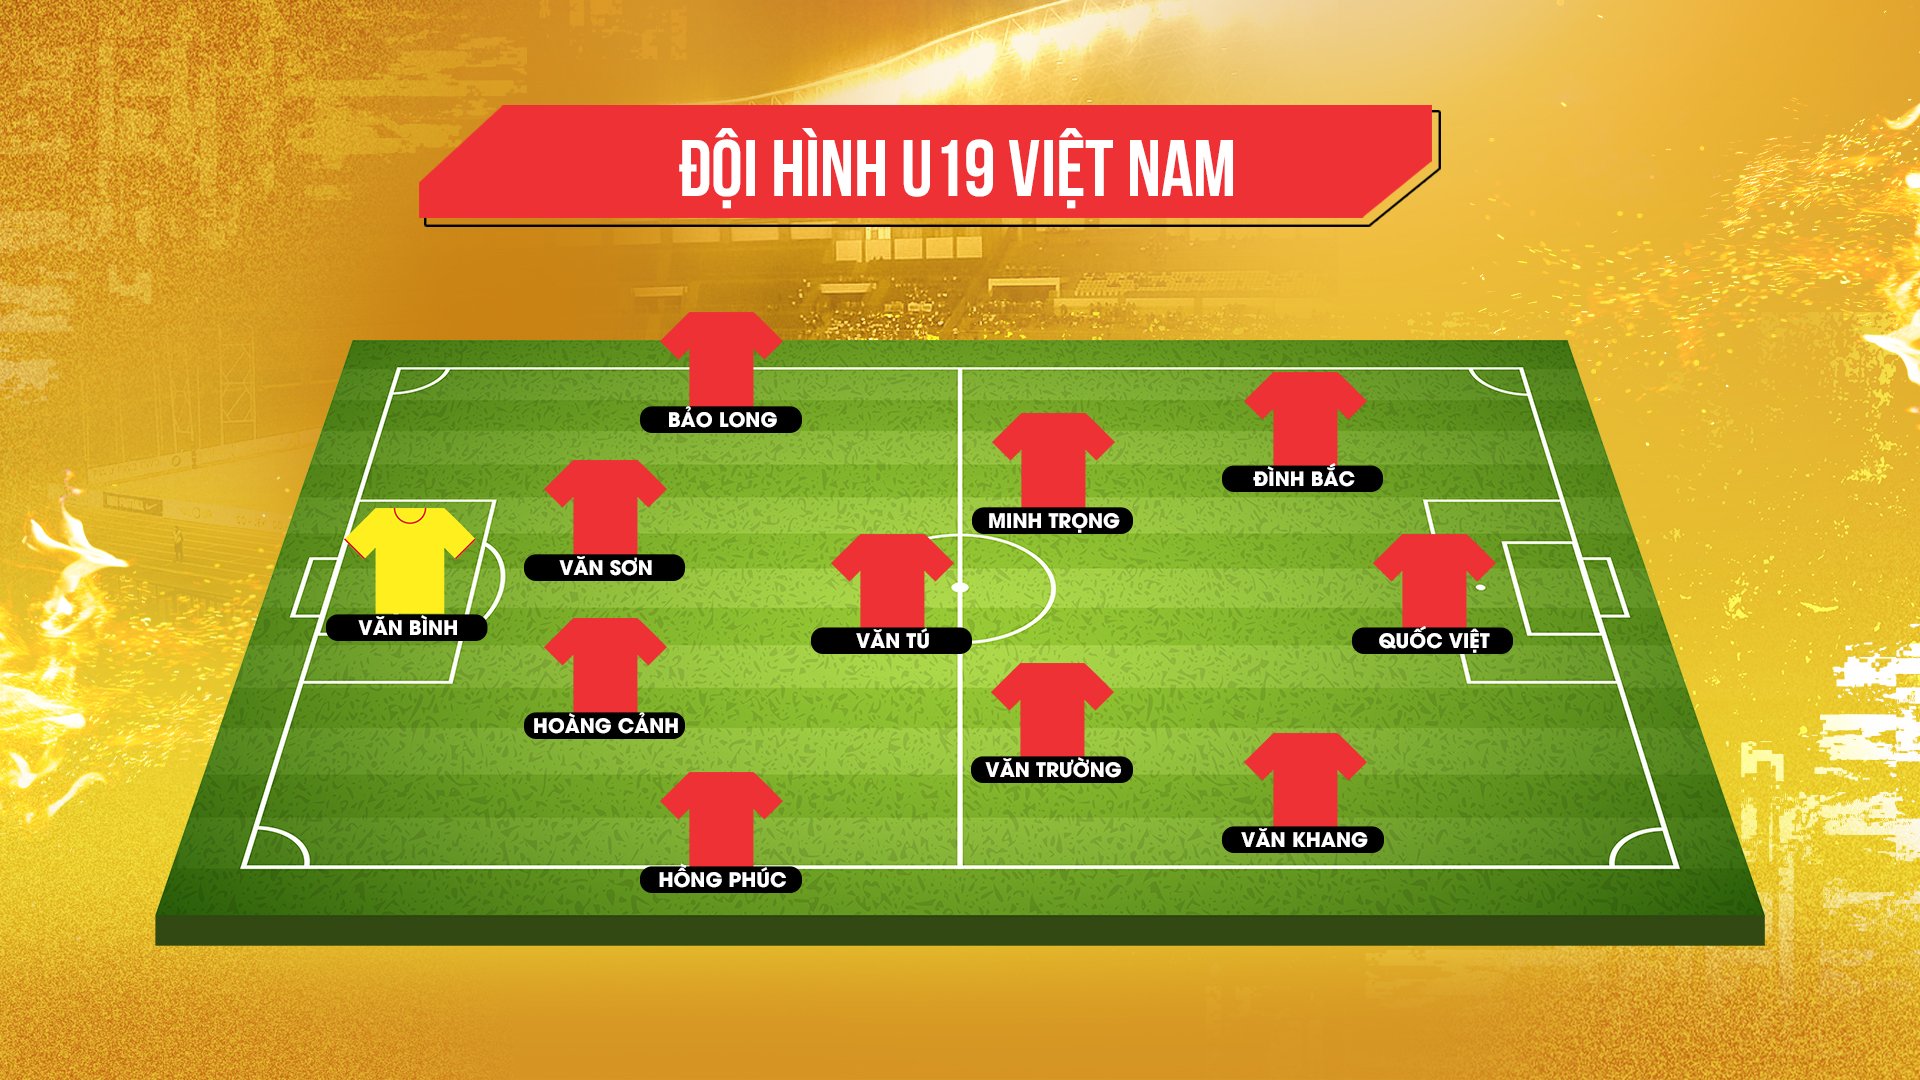 Trực tiếp U19 Việt Nam vs U19 Philippines: Văn Trường, Văn Khang đá chính 155018